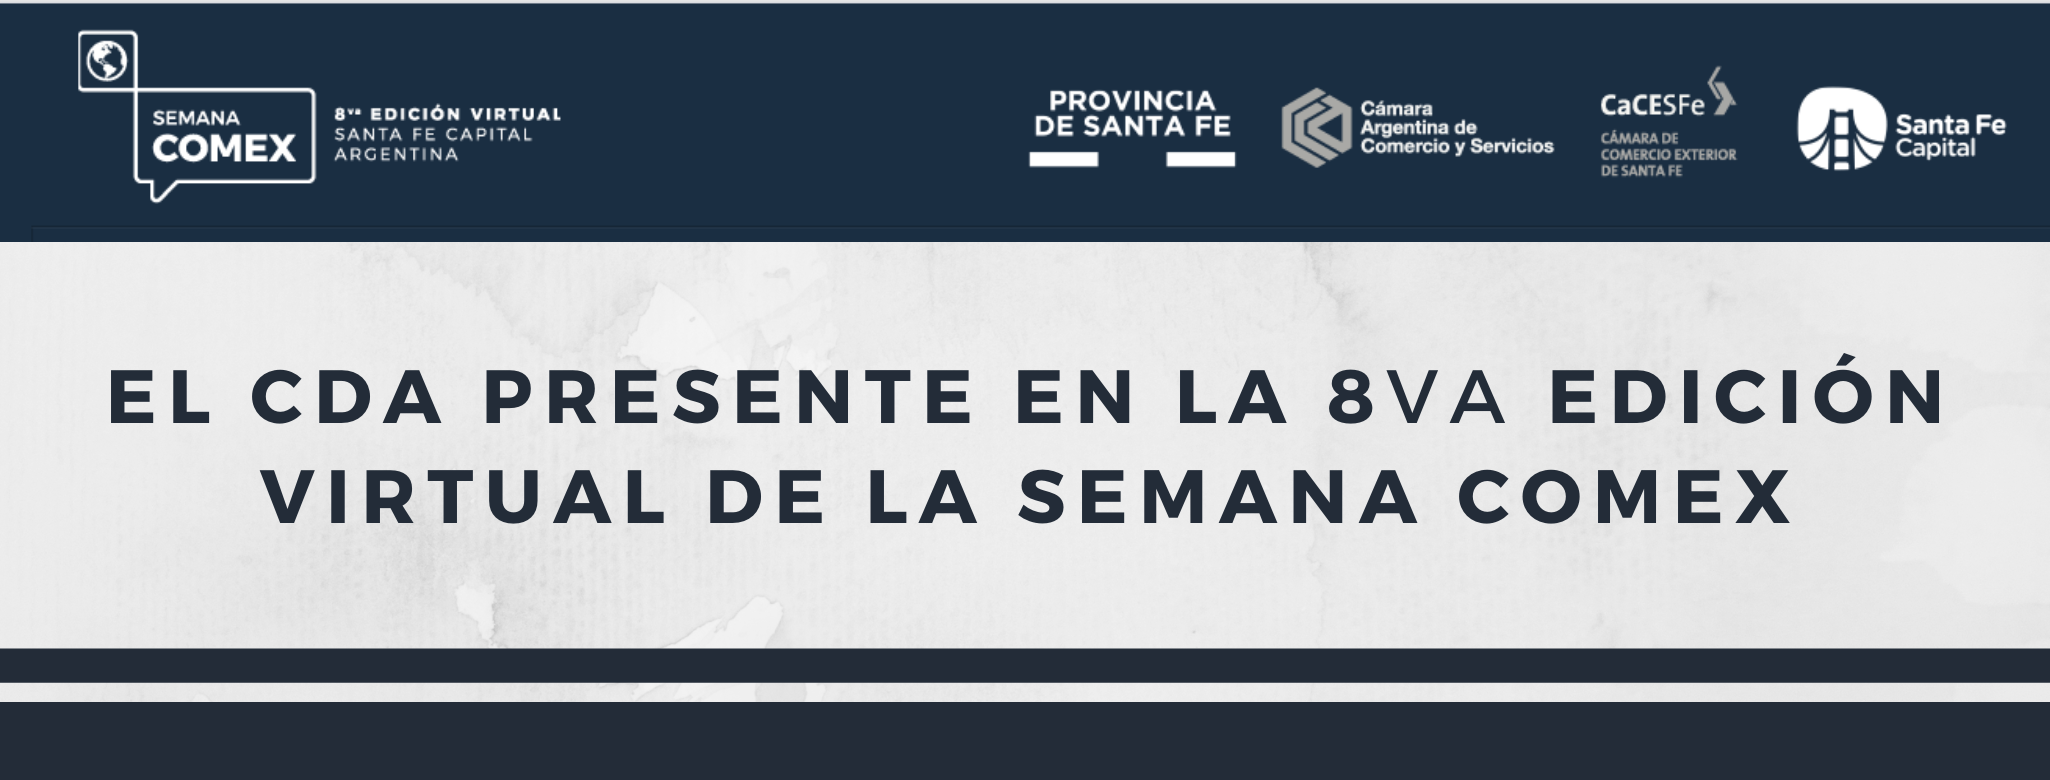 CDA - Centro Despachantes de Aduana de la Republica Argentina - El CDA  presente en la 8va Edición Virtual de la Semana Comex